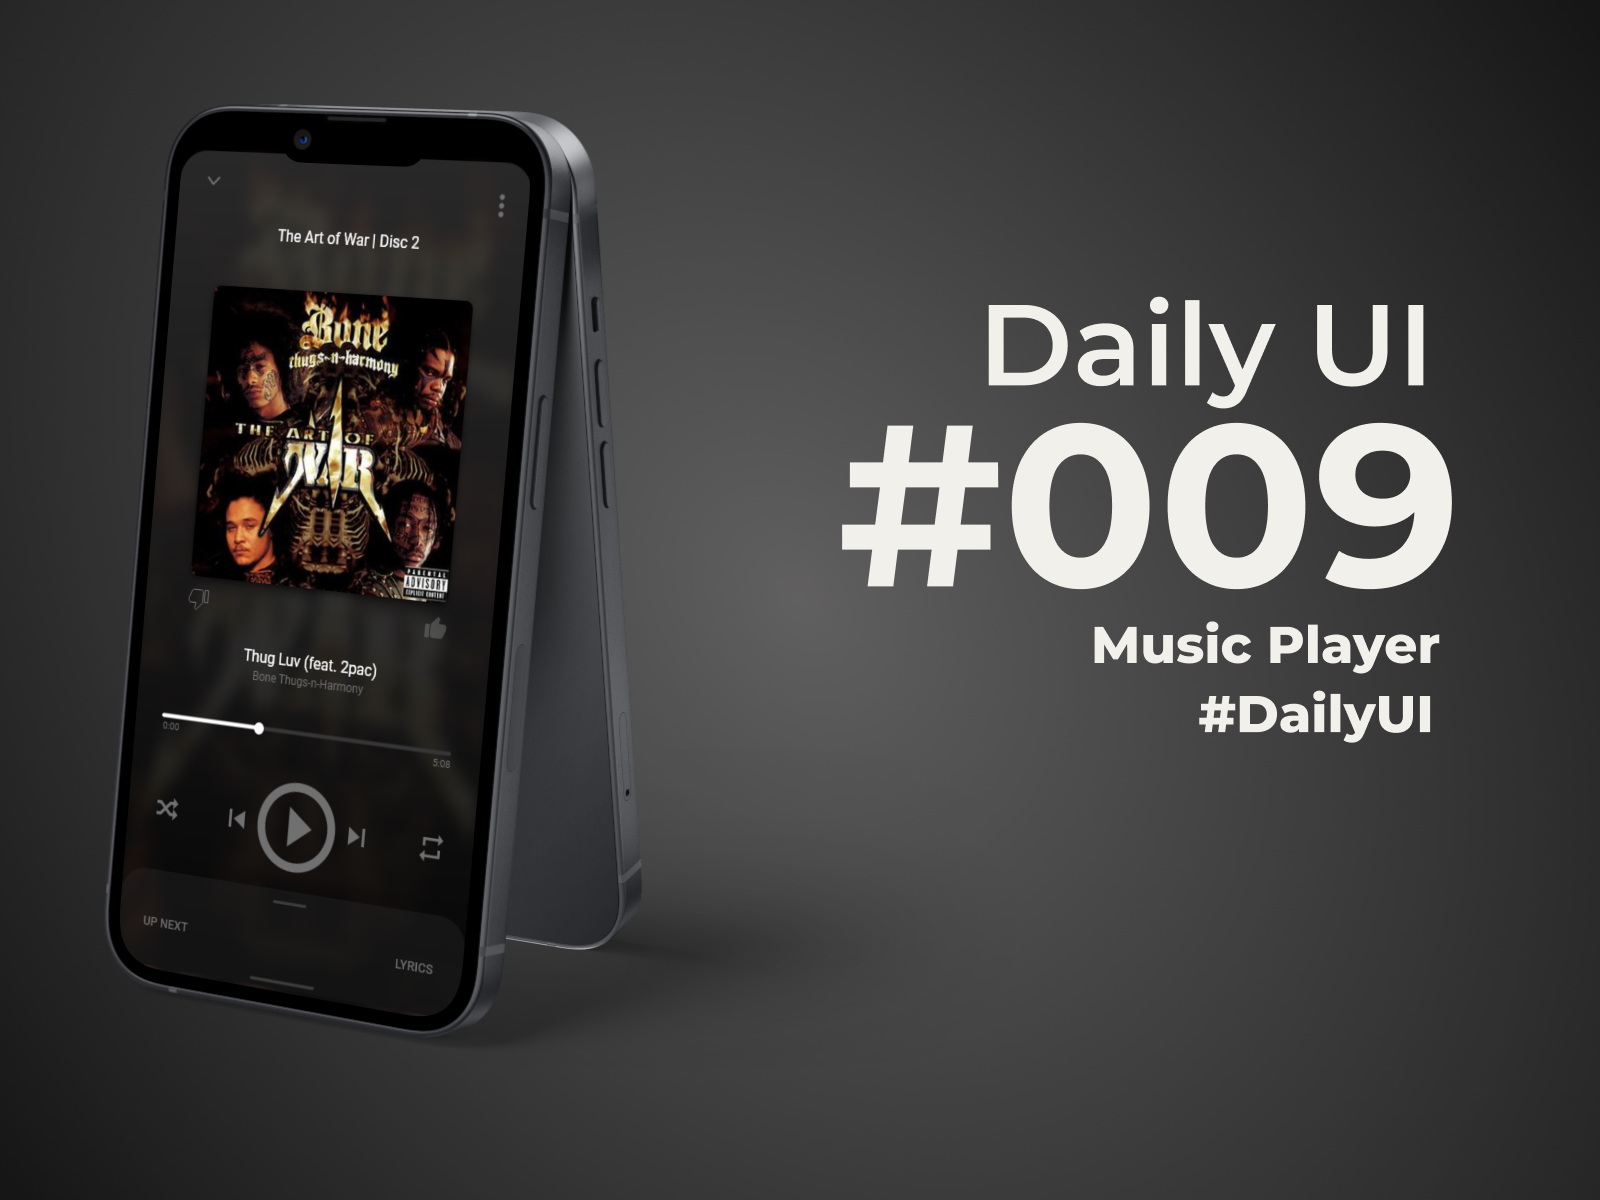 #dailyui #009 :: Music Player